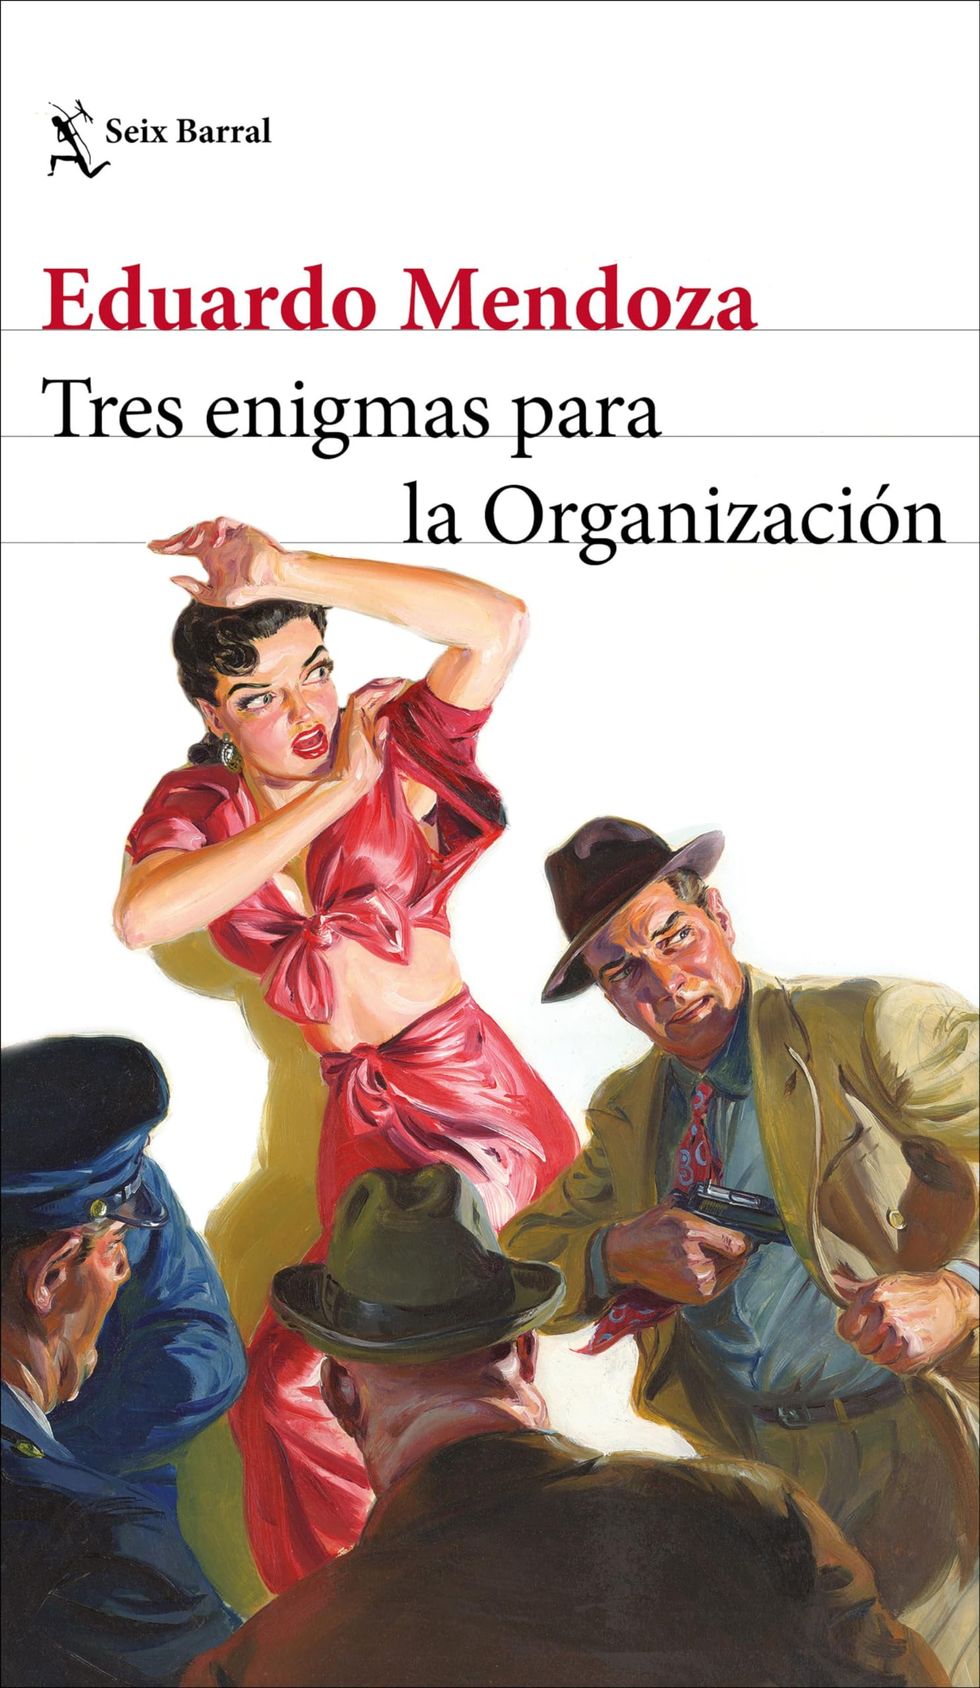 'Tres enigmas para la Organización' de Eduardo Mendoza [24 de enero]